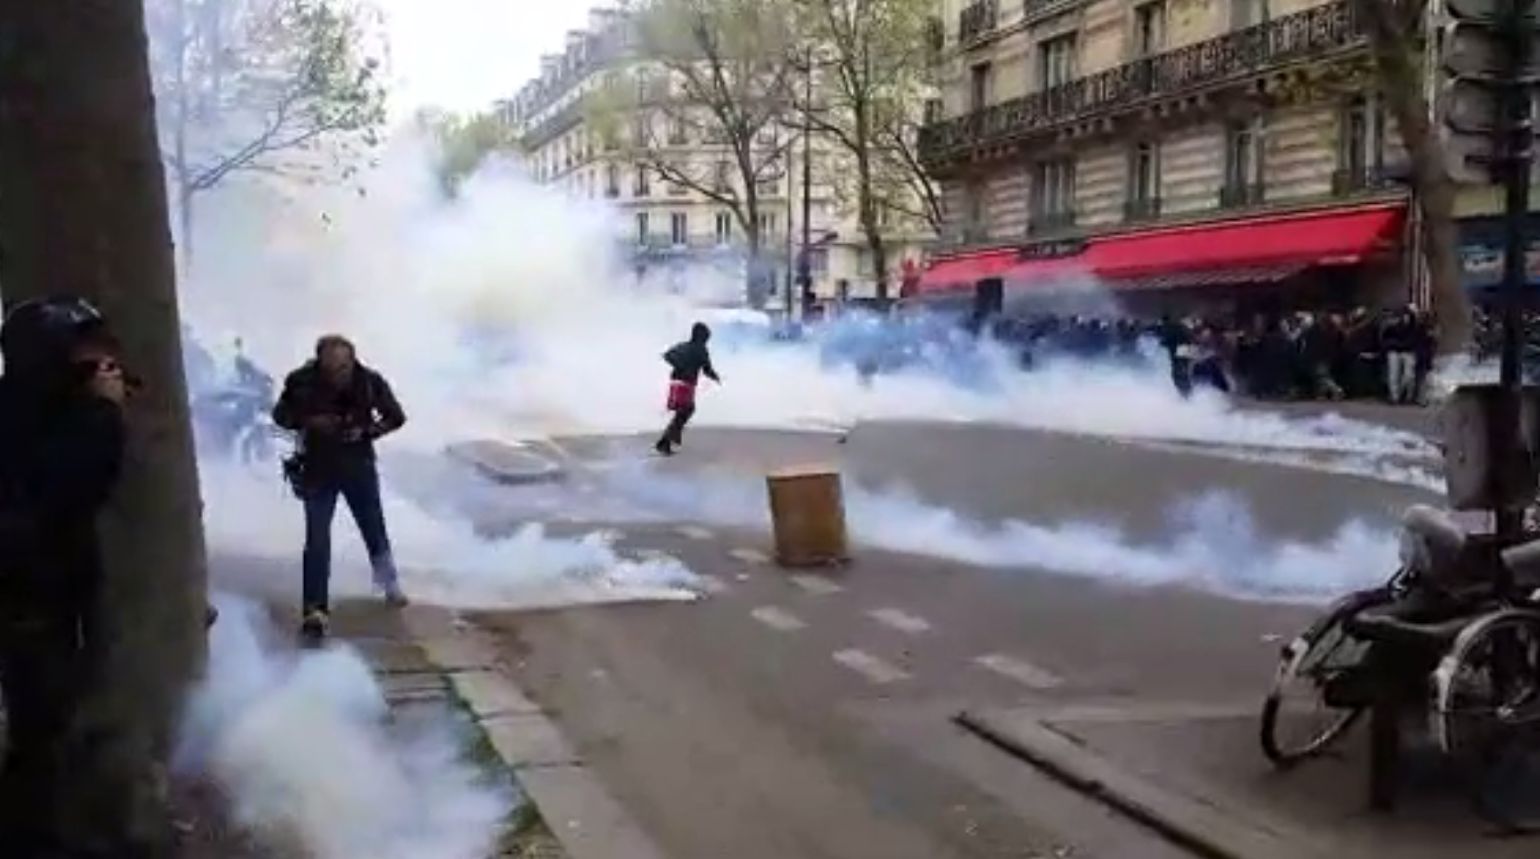 En images : gaz lacrymogènes, blessés, voitures défoncées à Paris (VIDEO, IMAGES PERTURBANTES)